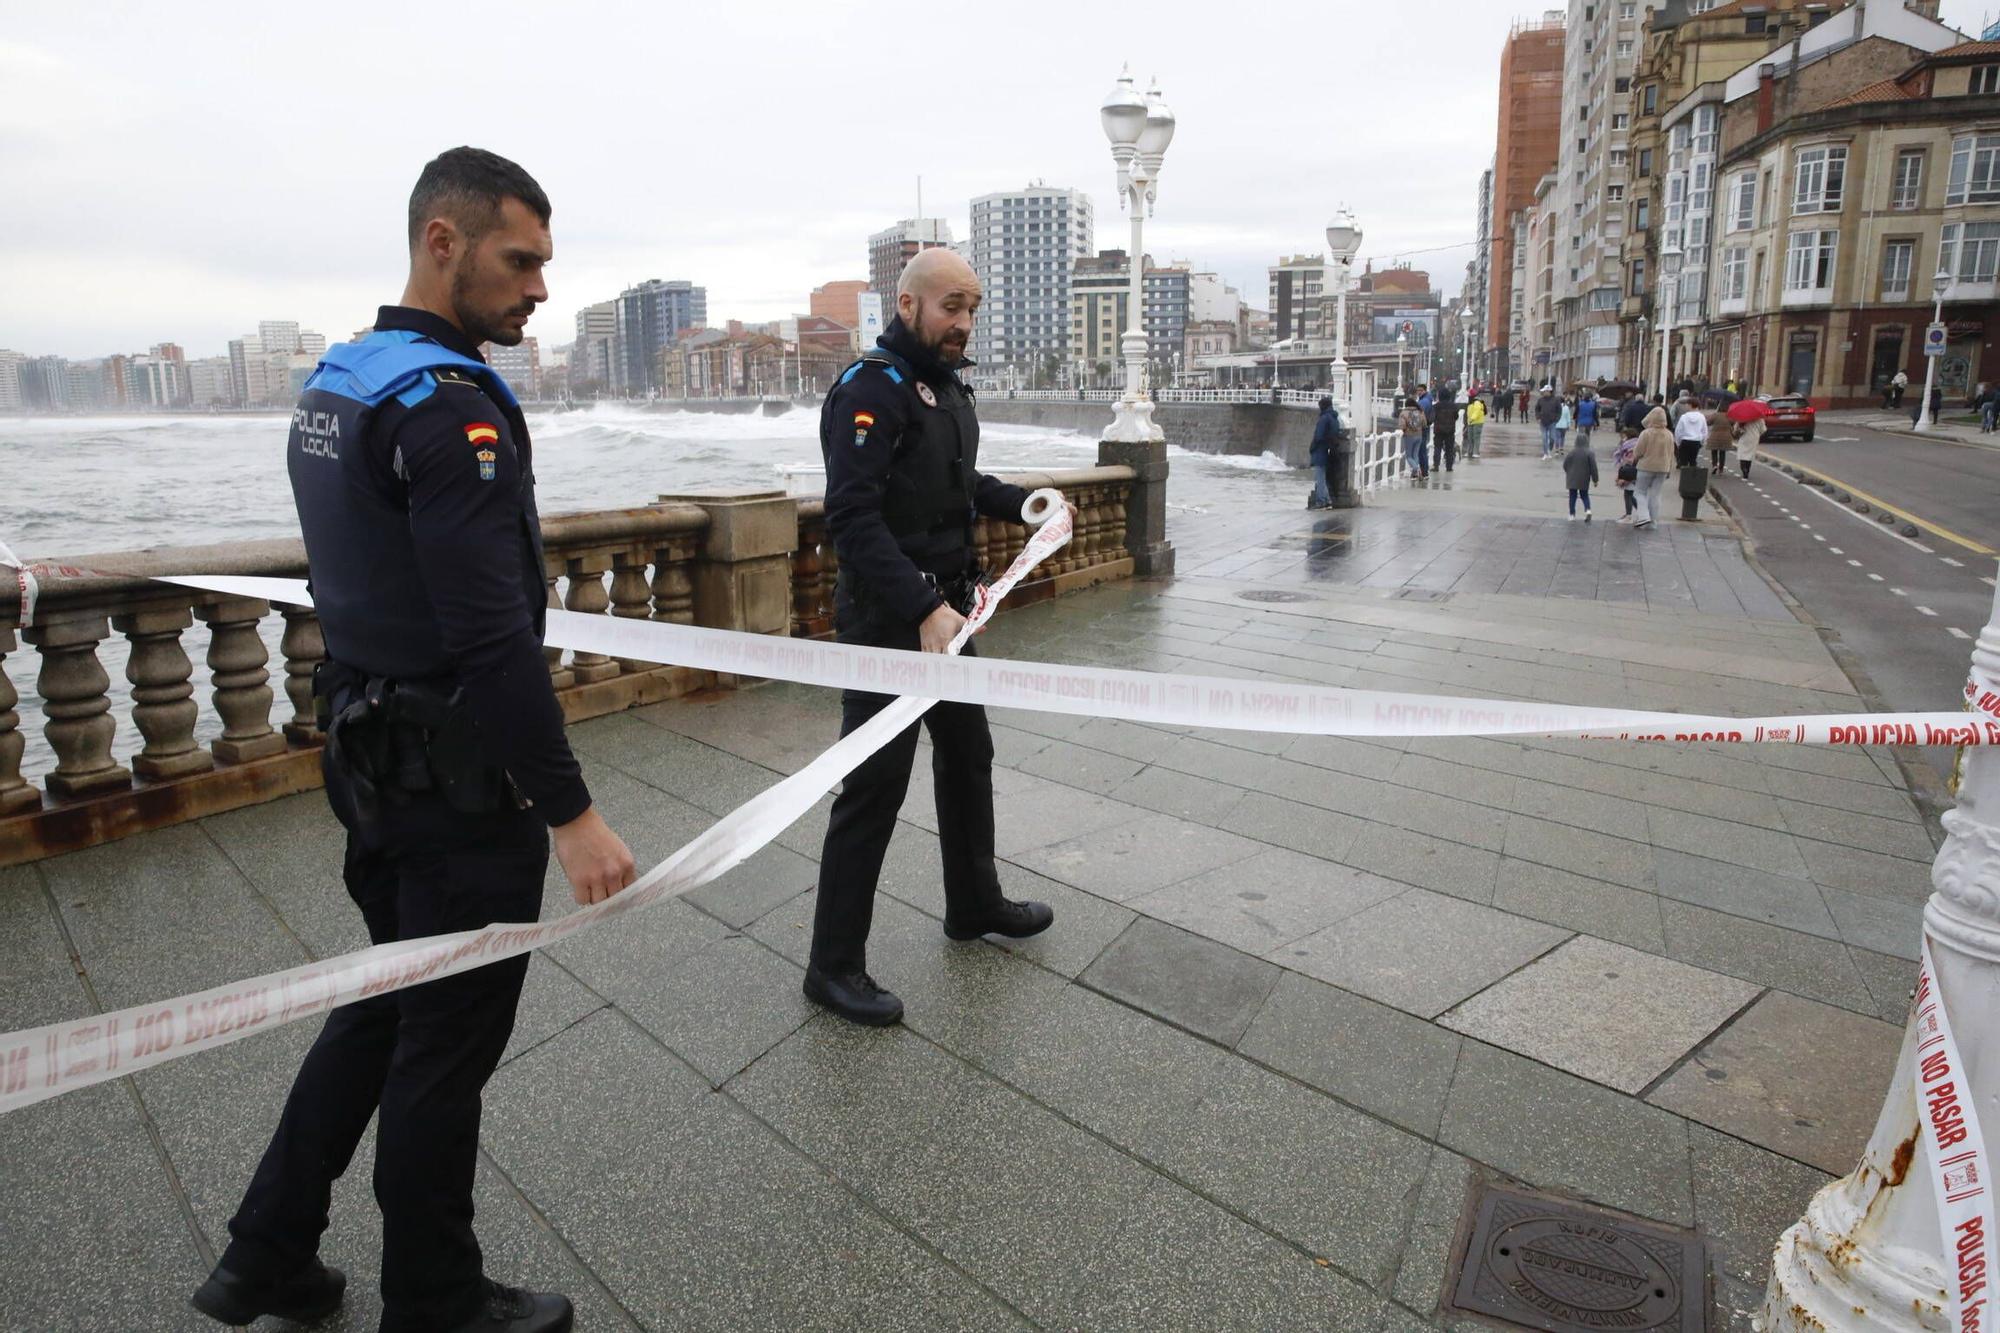 El oleaje vuelve a azotar la costa de Gijón y la Policía precinta parte del Muro (en imágenes)